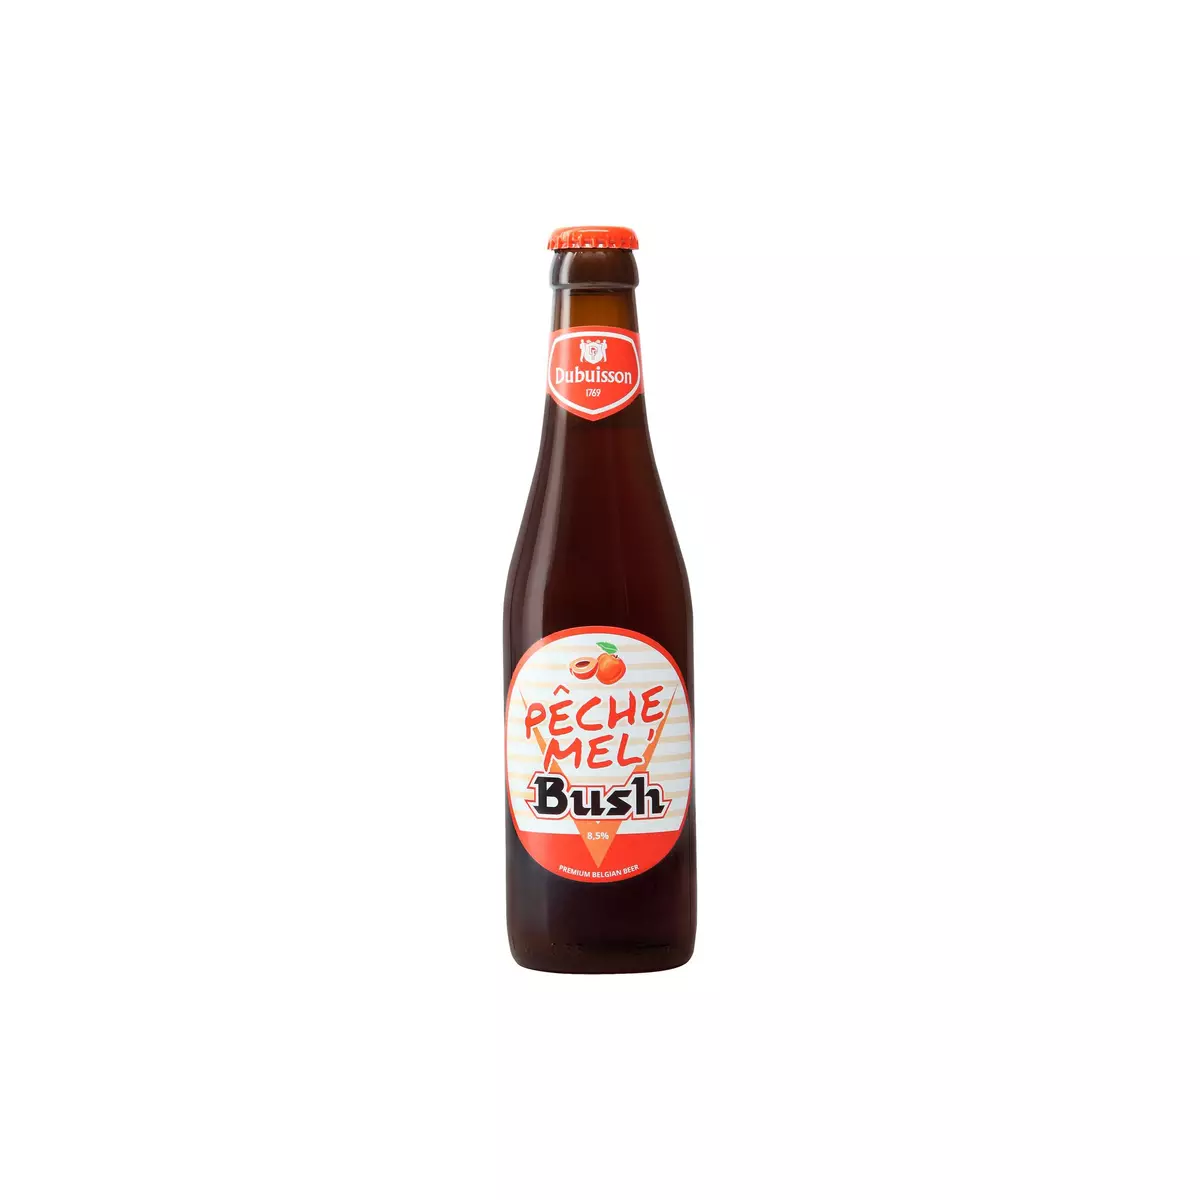 BUSH Bière ambrée aromatisée pêche miel 8,5% bouteille 33cl